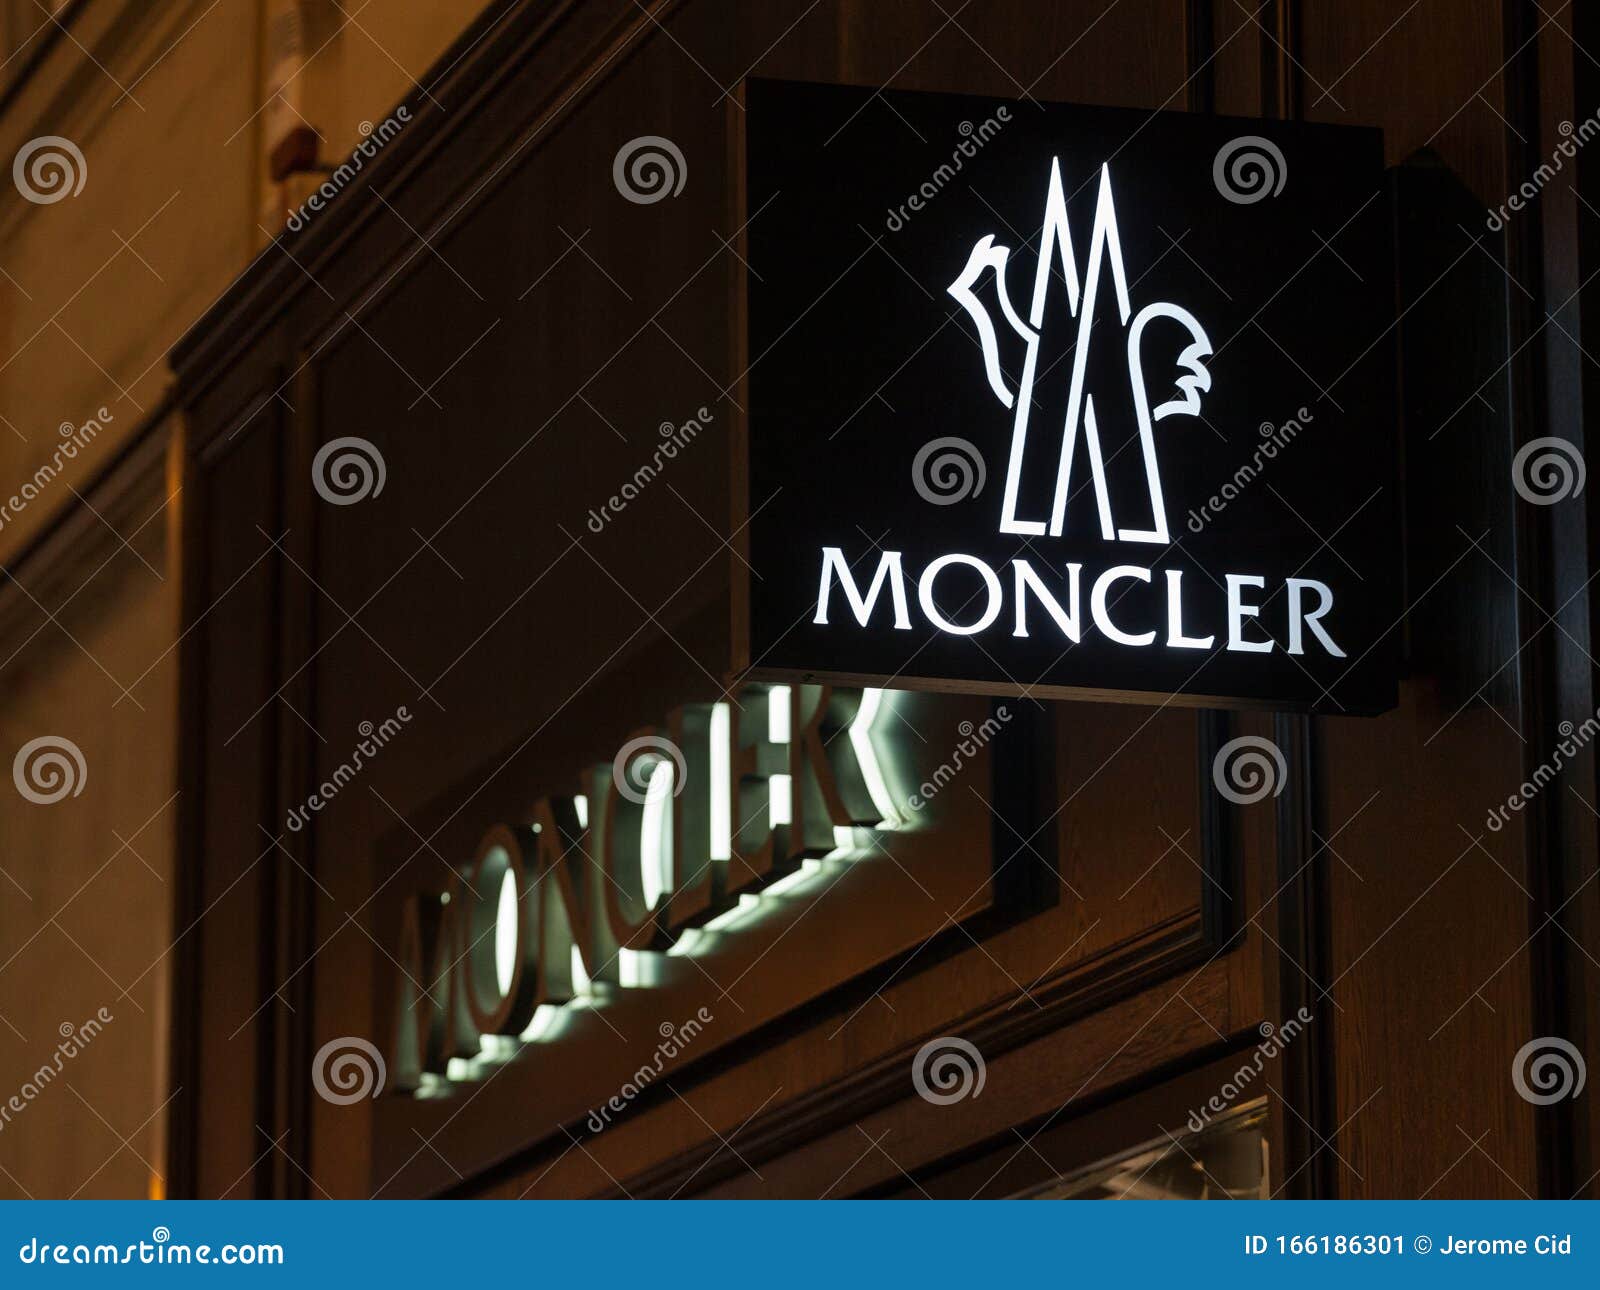 moncler manufacturer